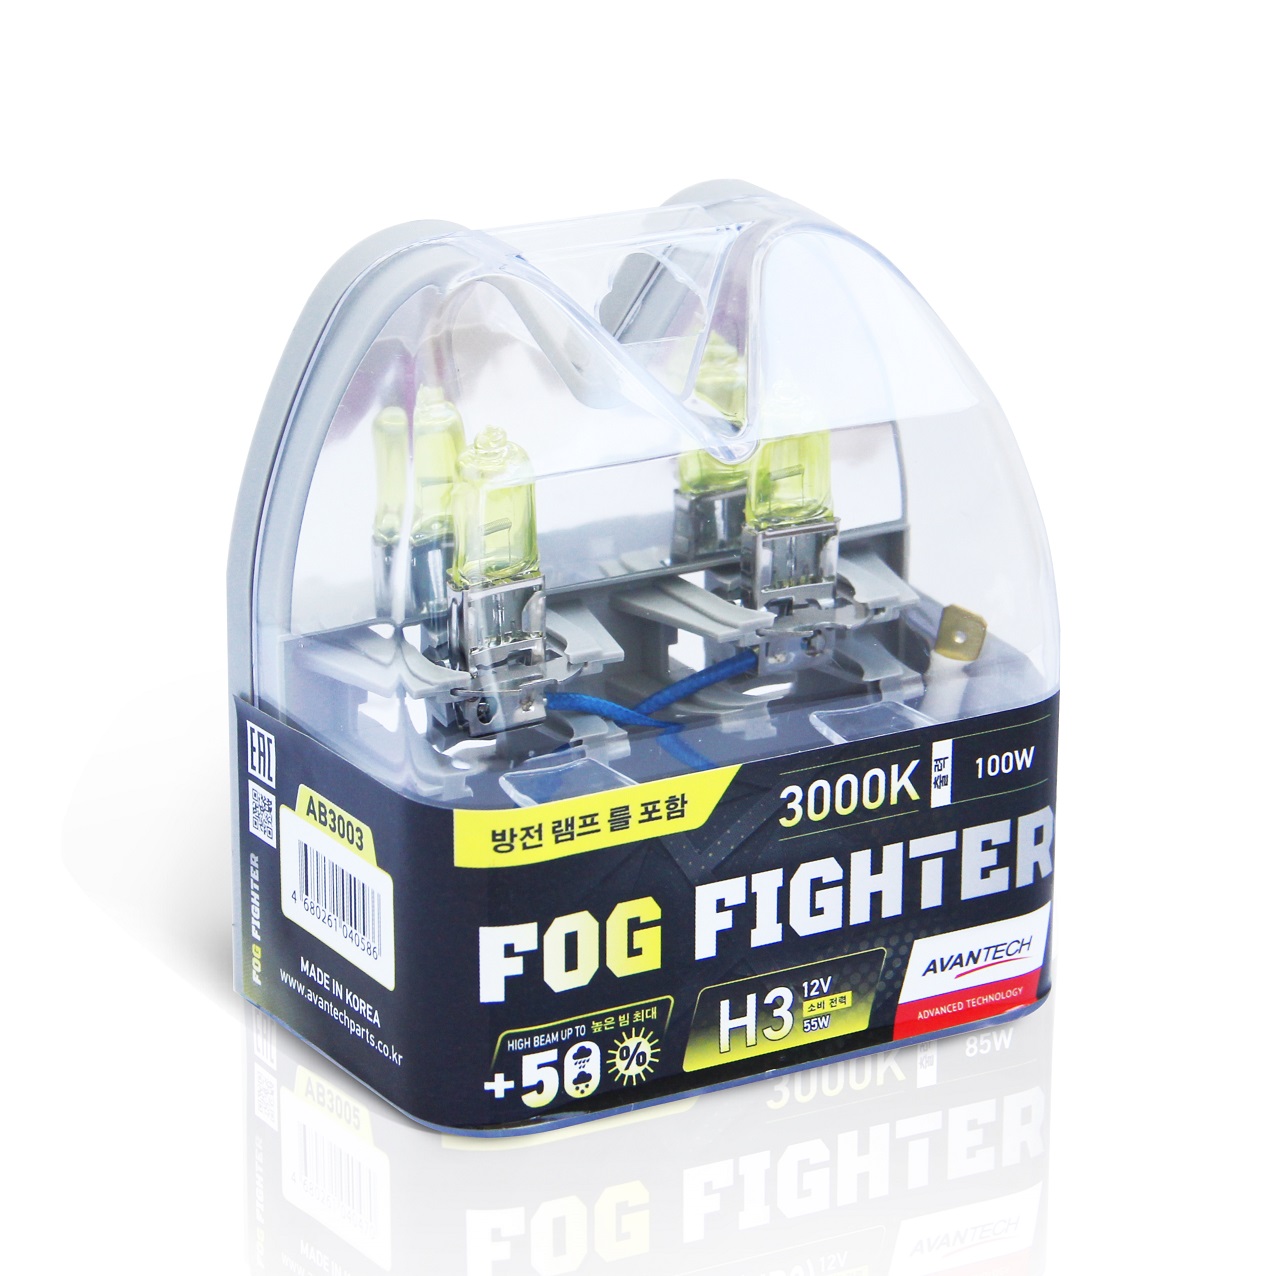 Avantech FOG FIGHTER H3 12V 55W (100W) 3000K